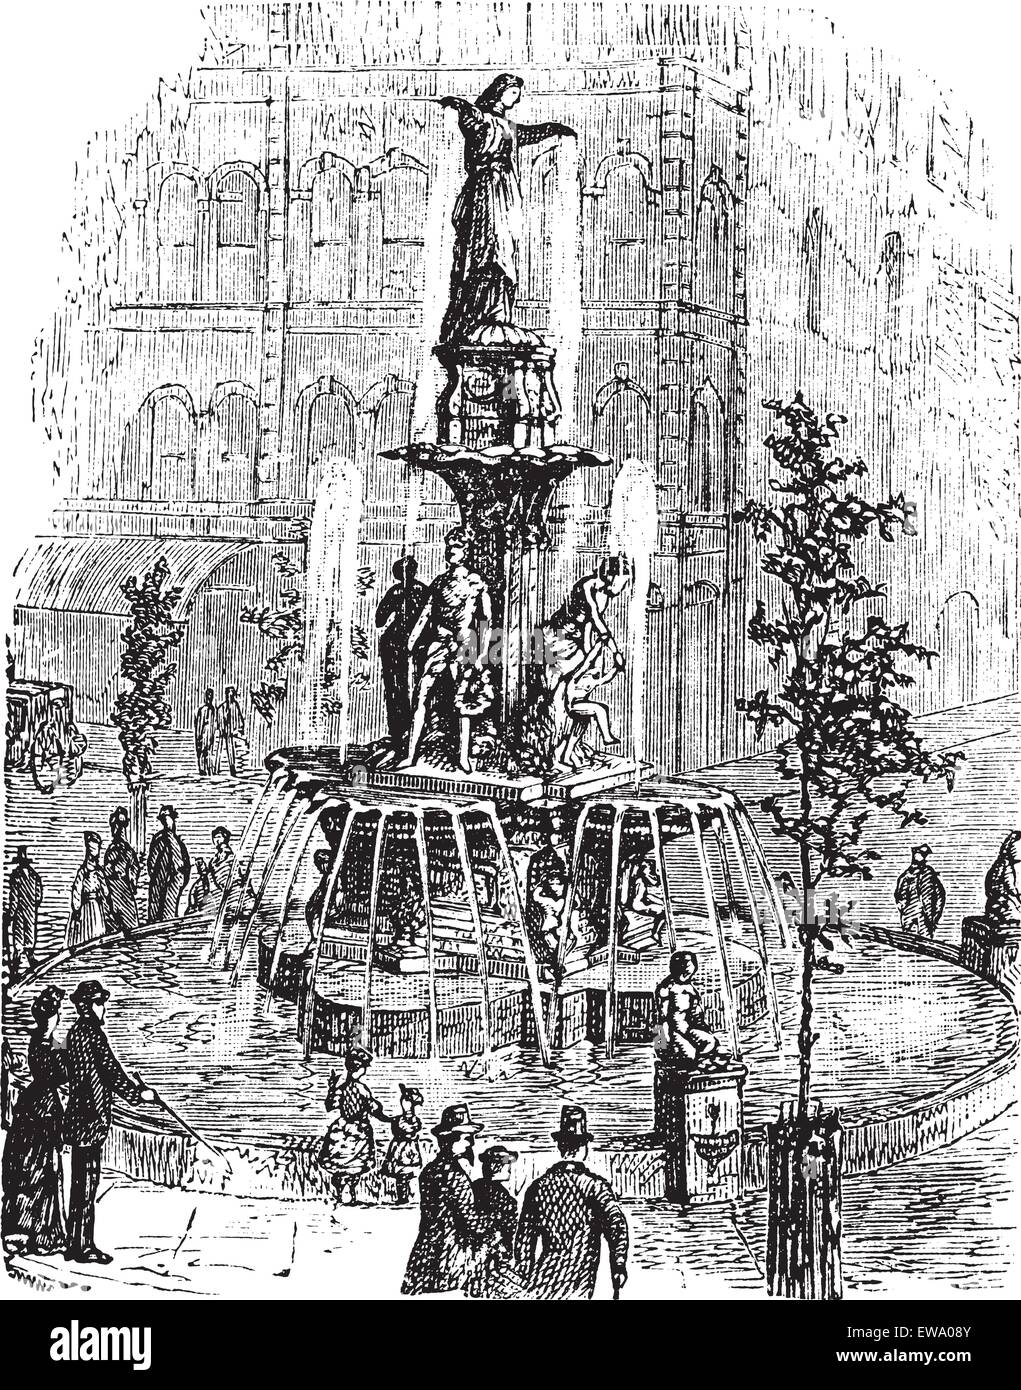 Tyler Davidson fontana o Genius di acqua o la Signora o la Fontana di Cincinnati, Ohio, Stati Uniti d'America, durante il 1890s, engr vintage Illustrazione Vettoriale